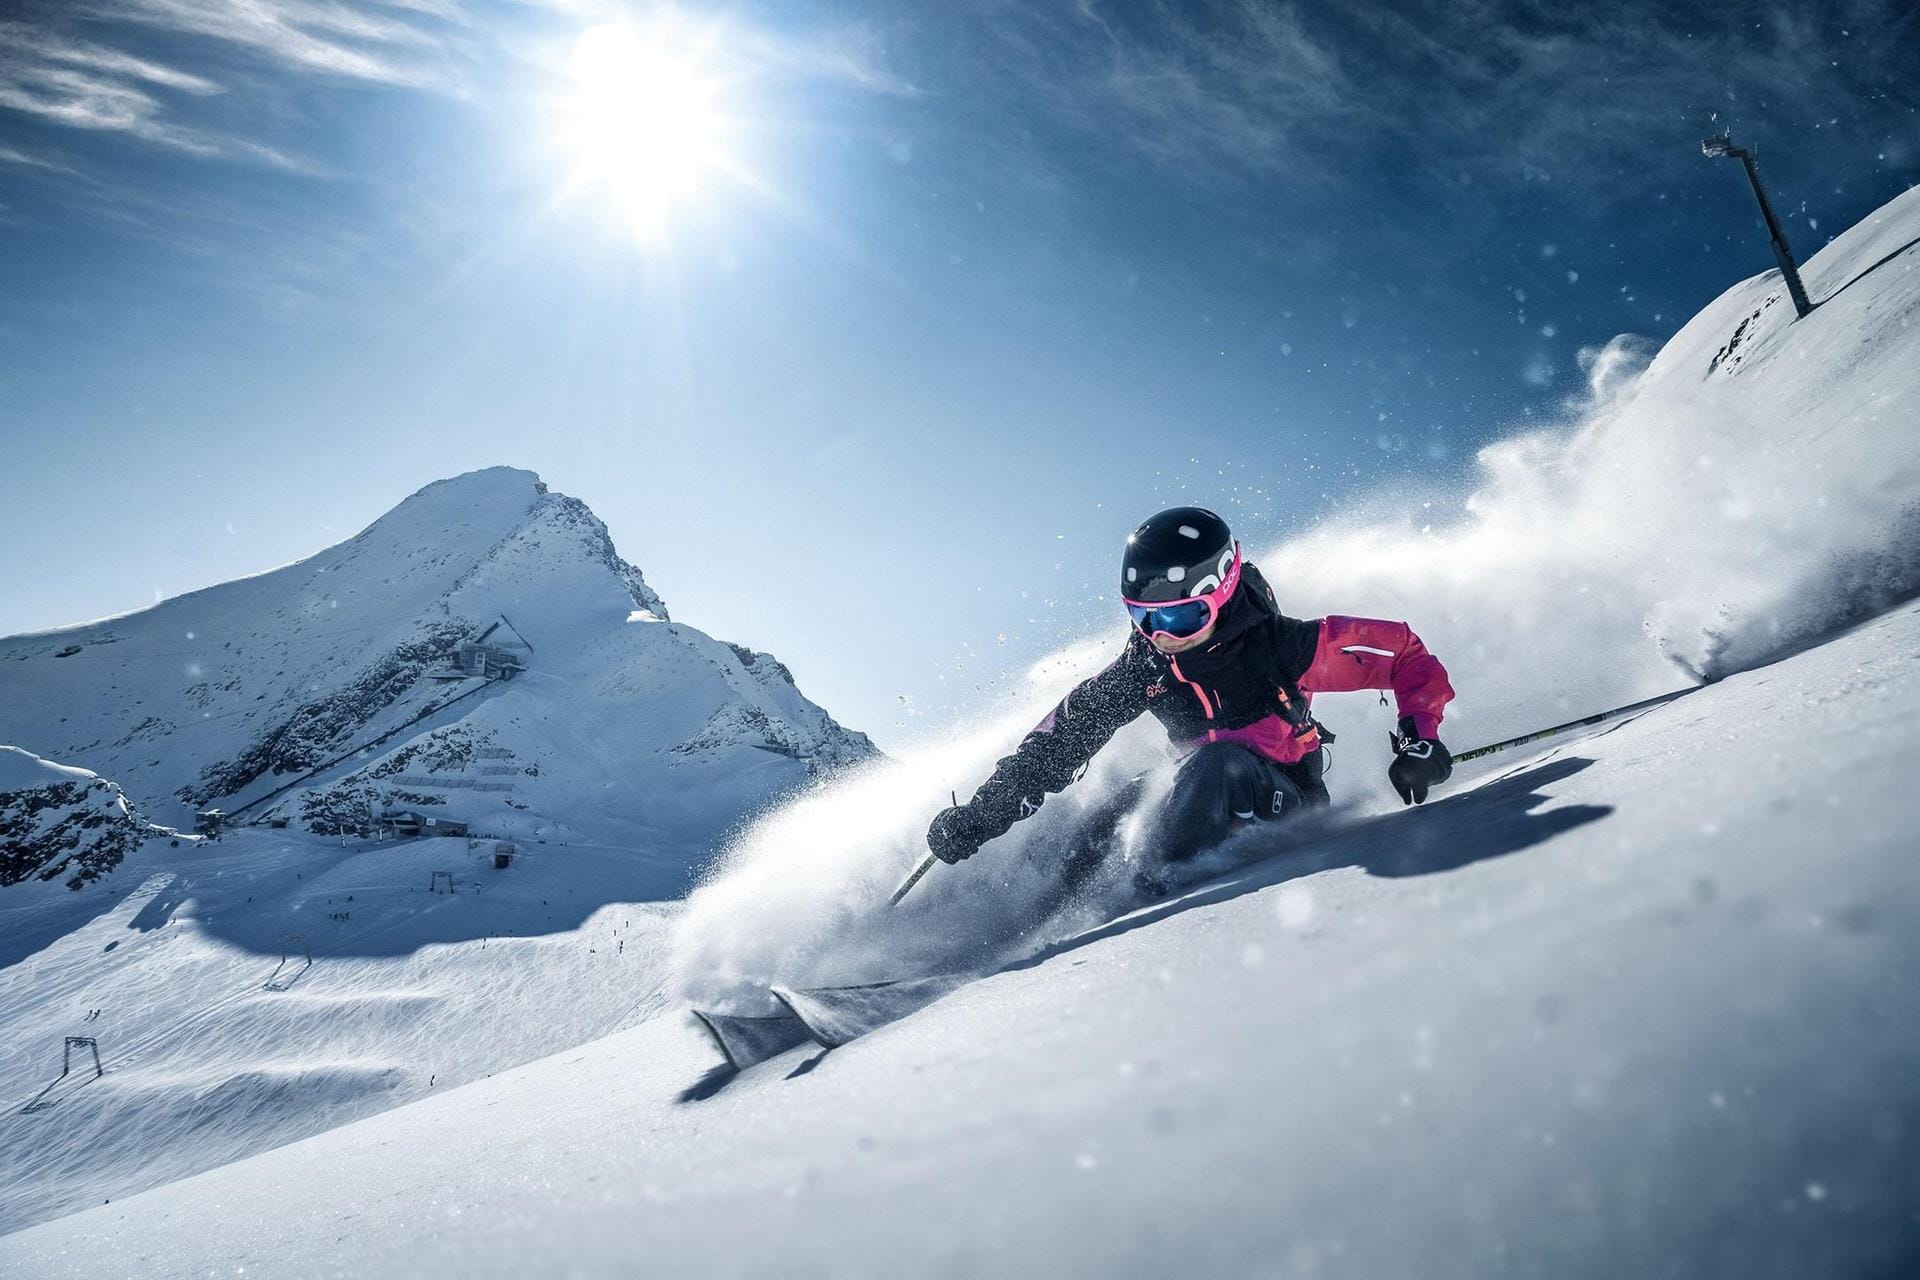 KItzsteinhorn – Ein Freestyle Contest sowie kostenfreie Ski- und Snowboardtests aller neuen Modelle der großen Wintersportmarken werden für beste Laune sorgen.